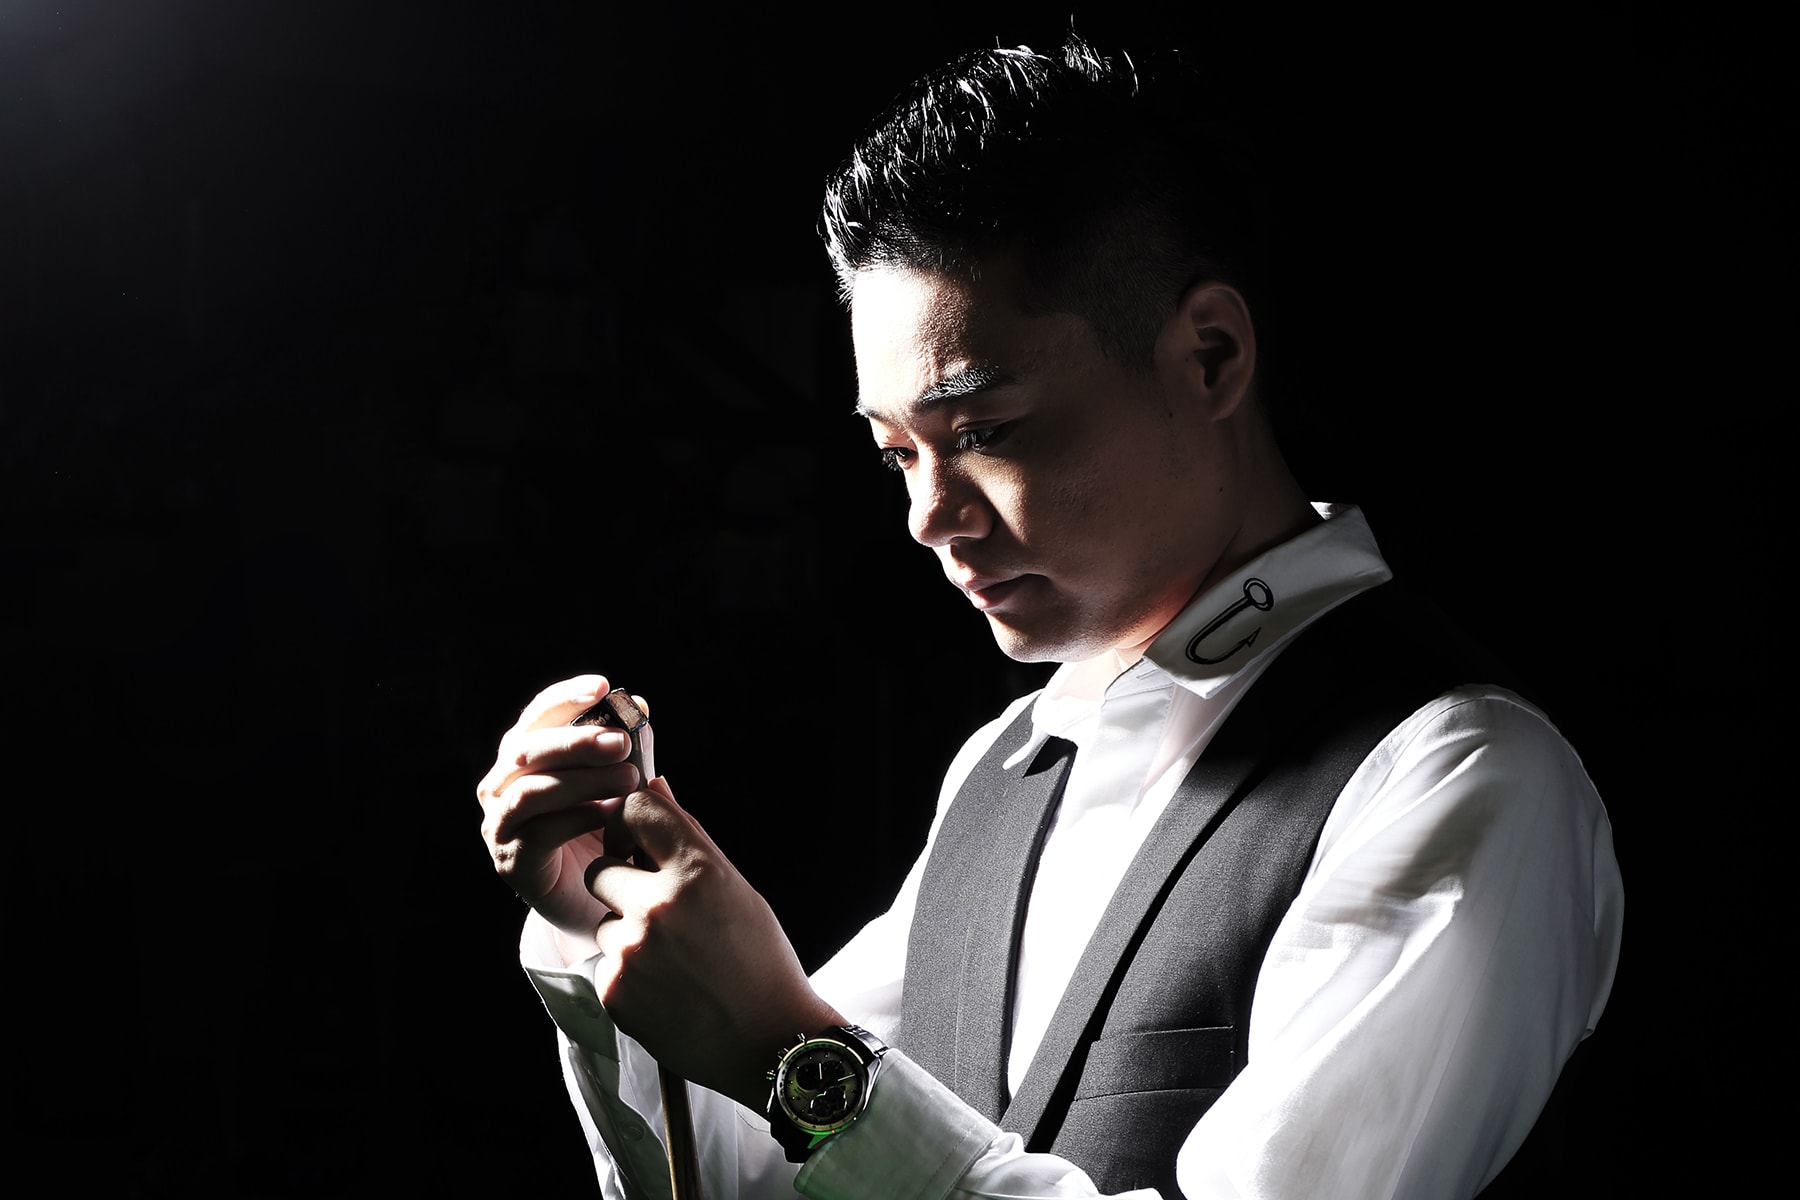 亞洲 Snooker 之王丁俊暉加盟 Zenith 成最新品牌大使